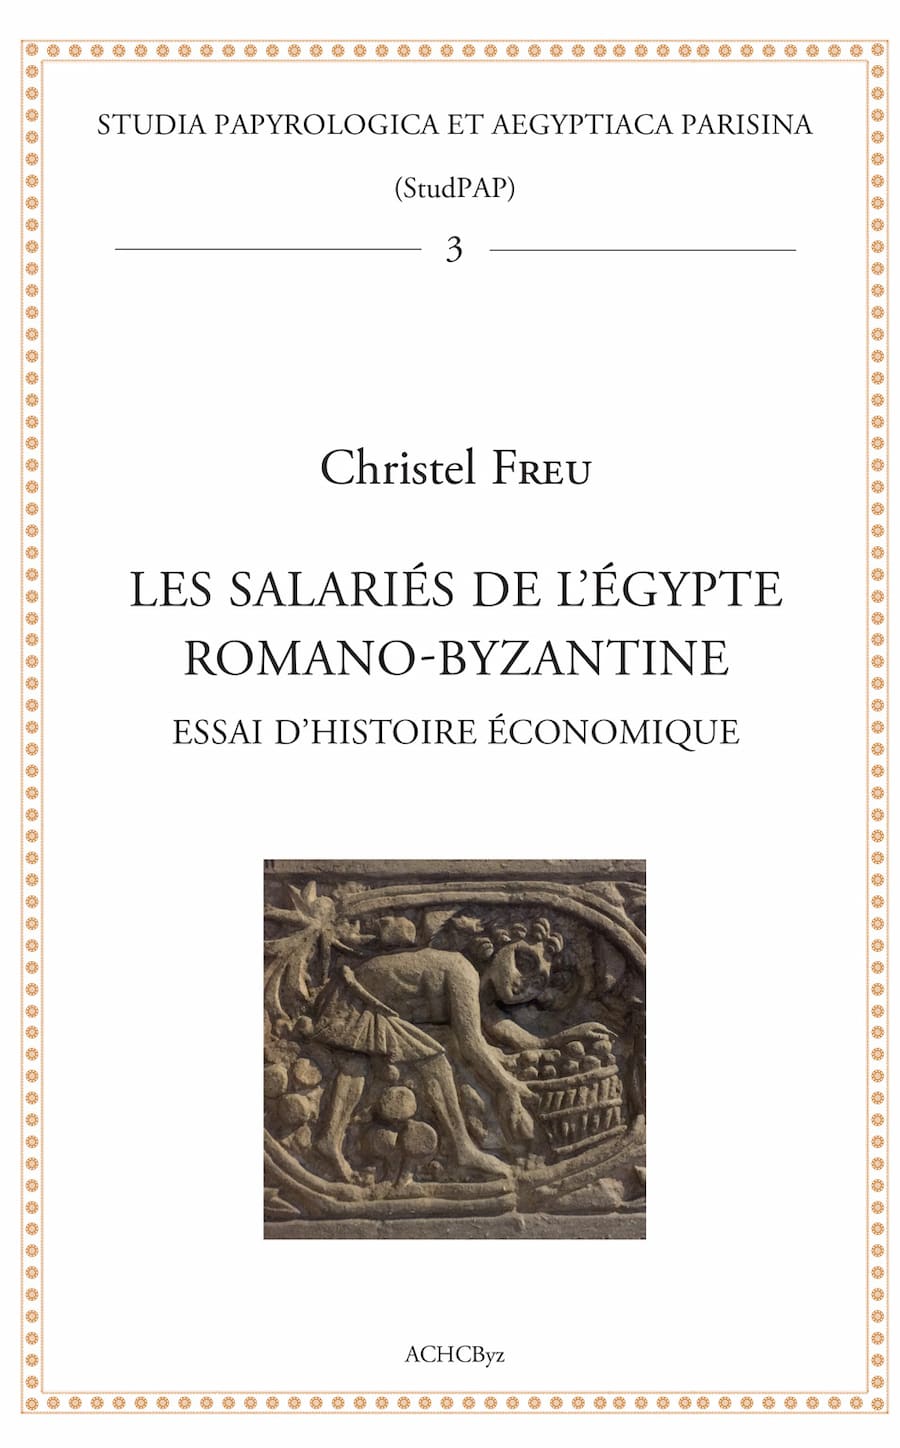 Les salariés de l'Egypte romano-byzantine - Essai d’histoire économique - Christel Freu